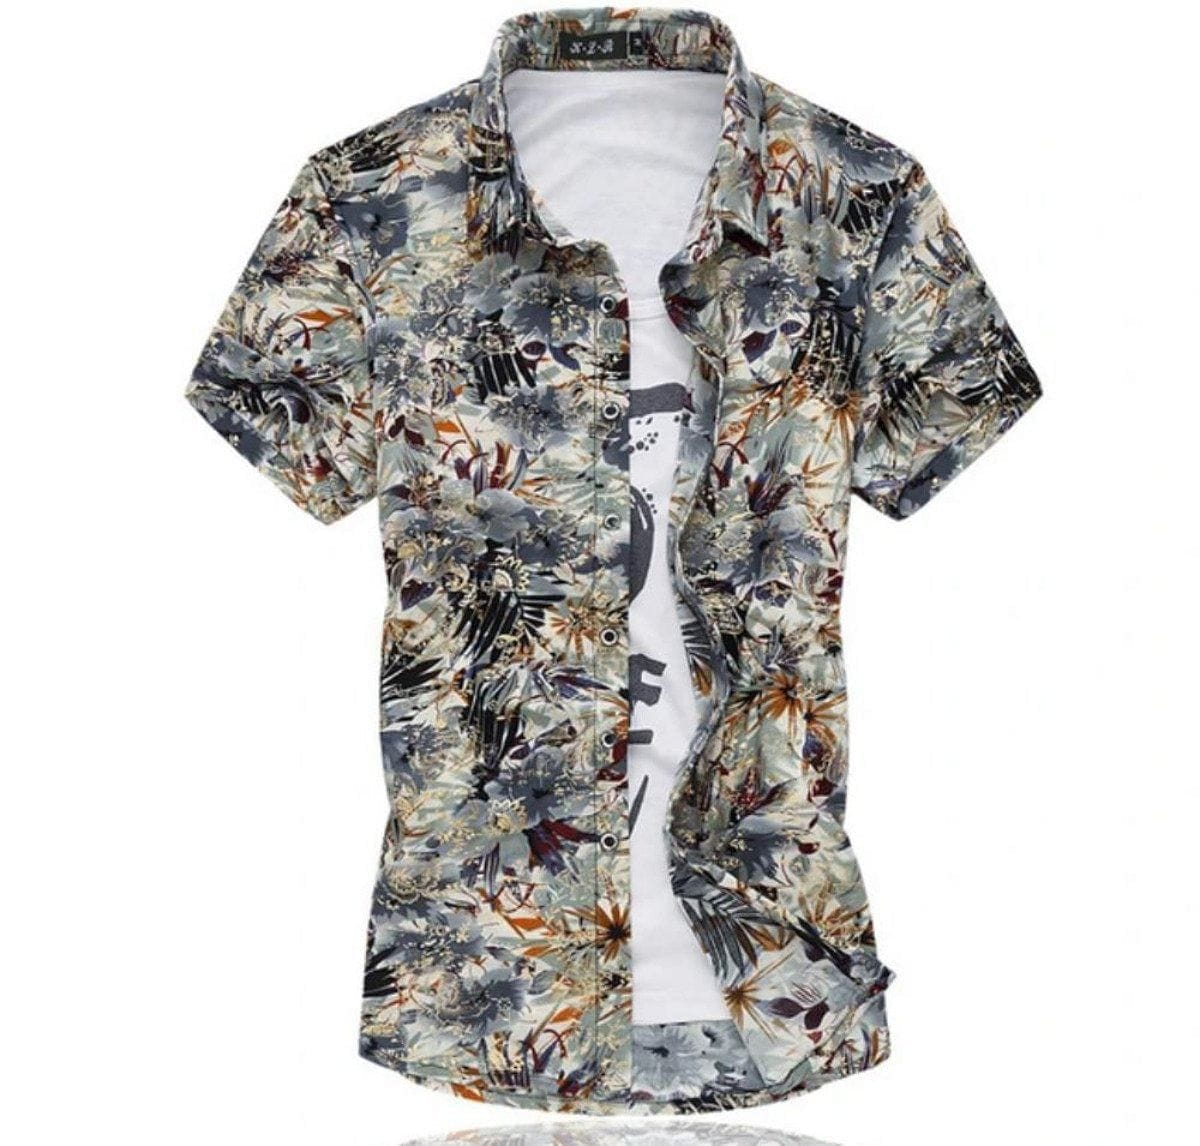 Mens Artistic Print Button Front Short Sleeve Shirt - Jafsale.com